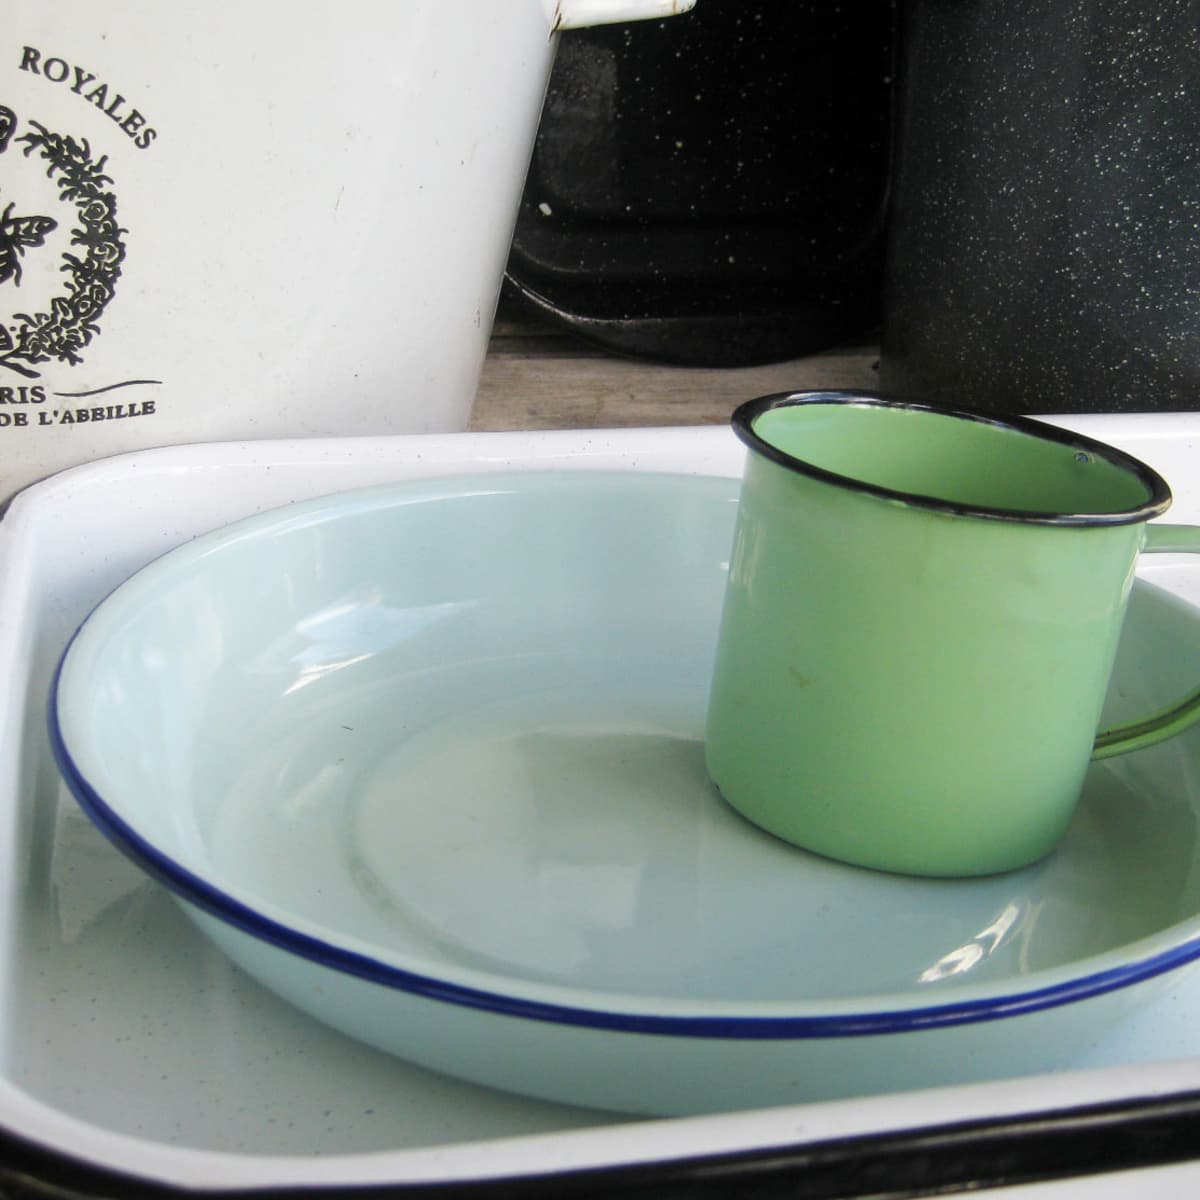 Vintage Tabletops Unlimited Porcelain Enamel Cookware Set - Ruby Lane